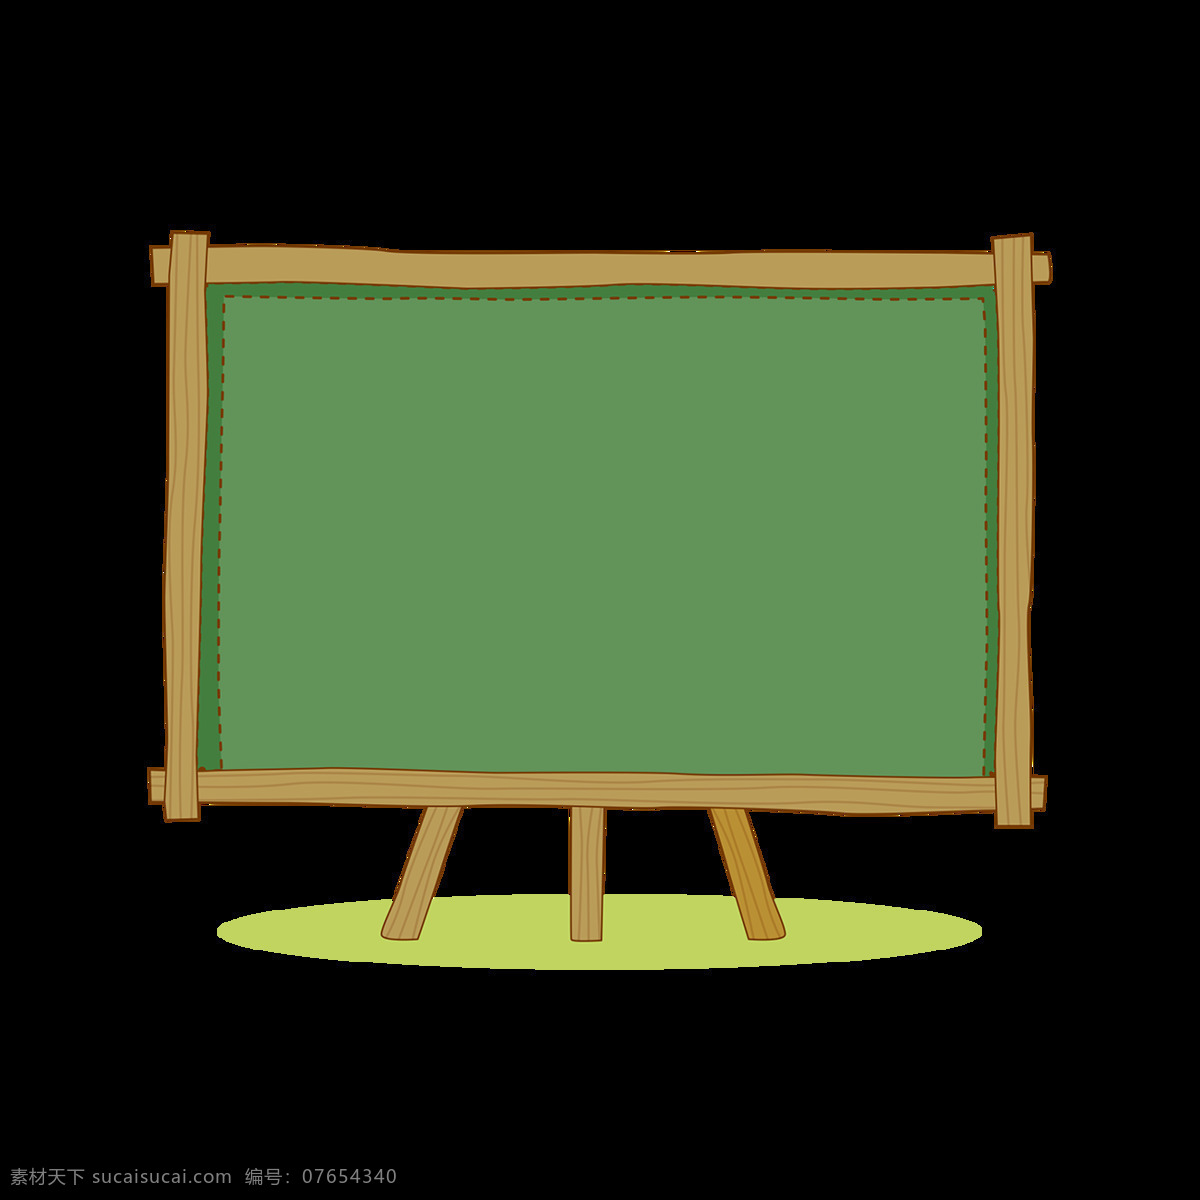 手绘 边框 黑板 元素 学习 知识 木框边框 免抠